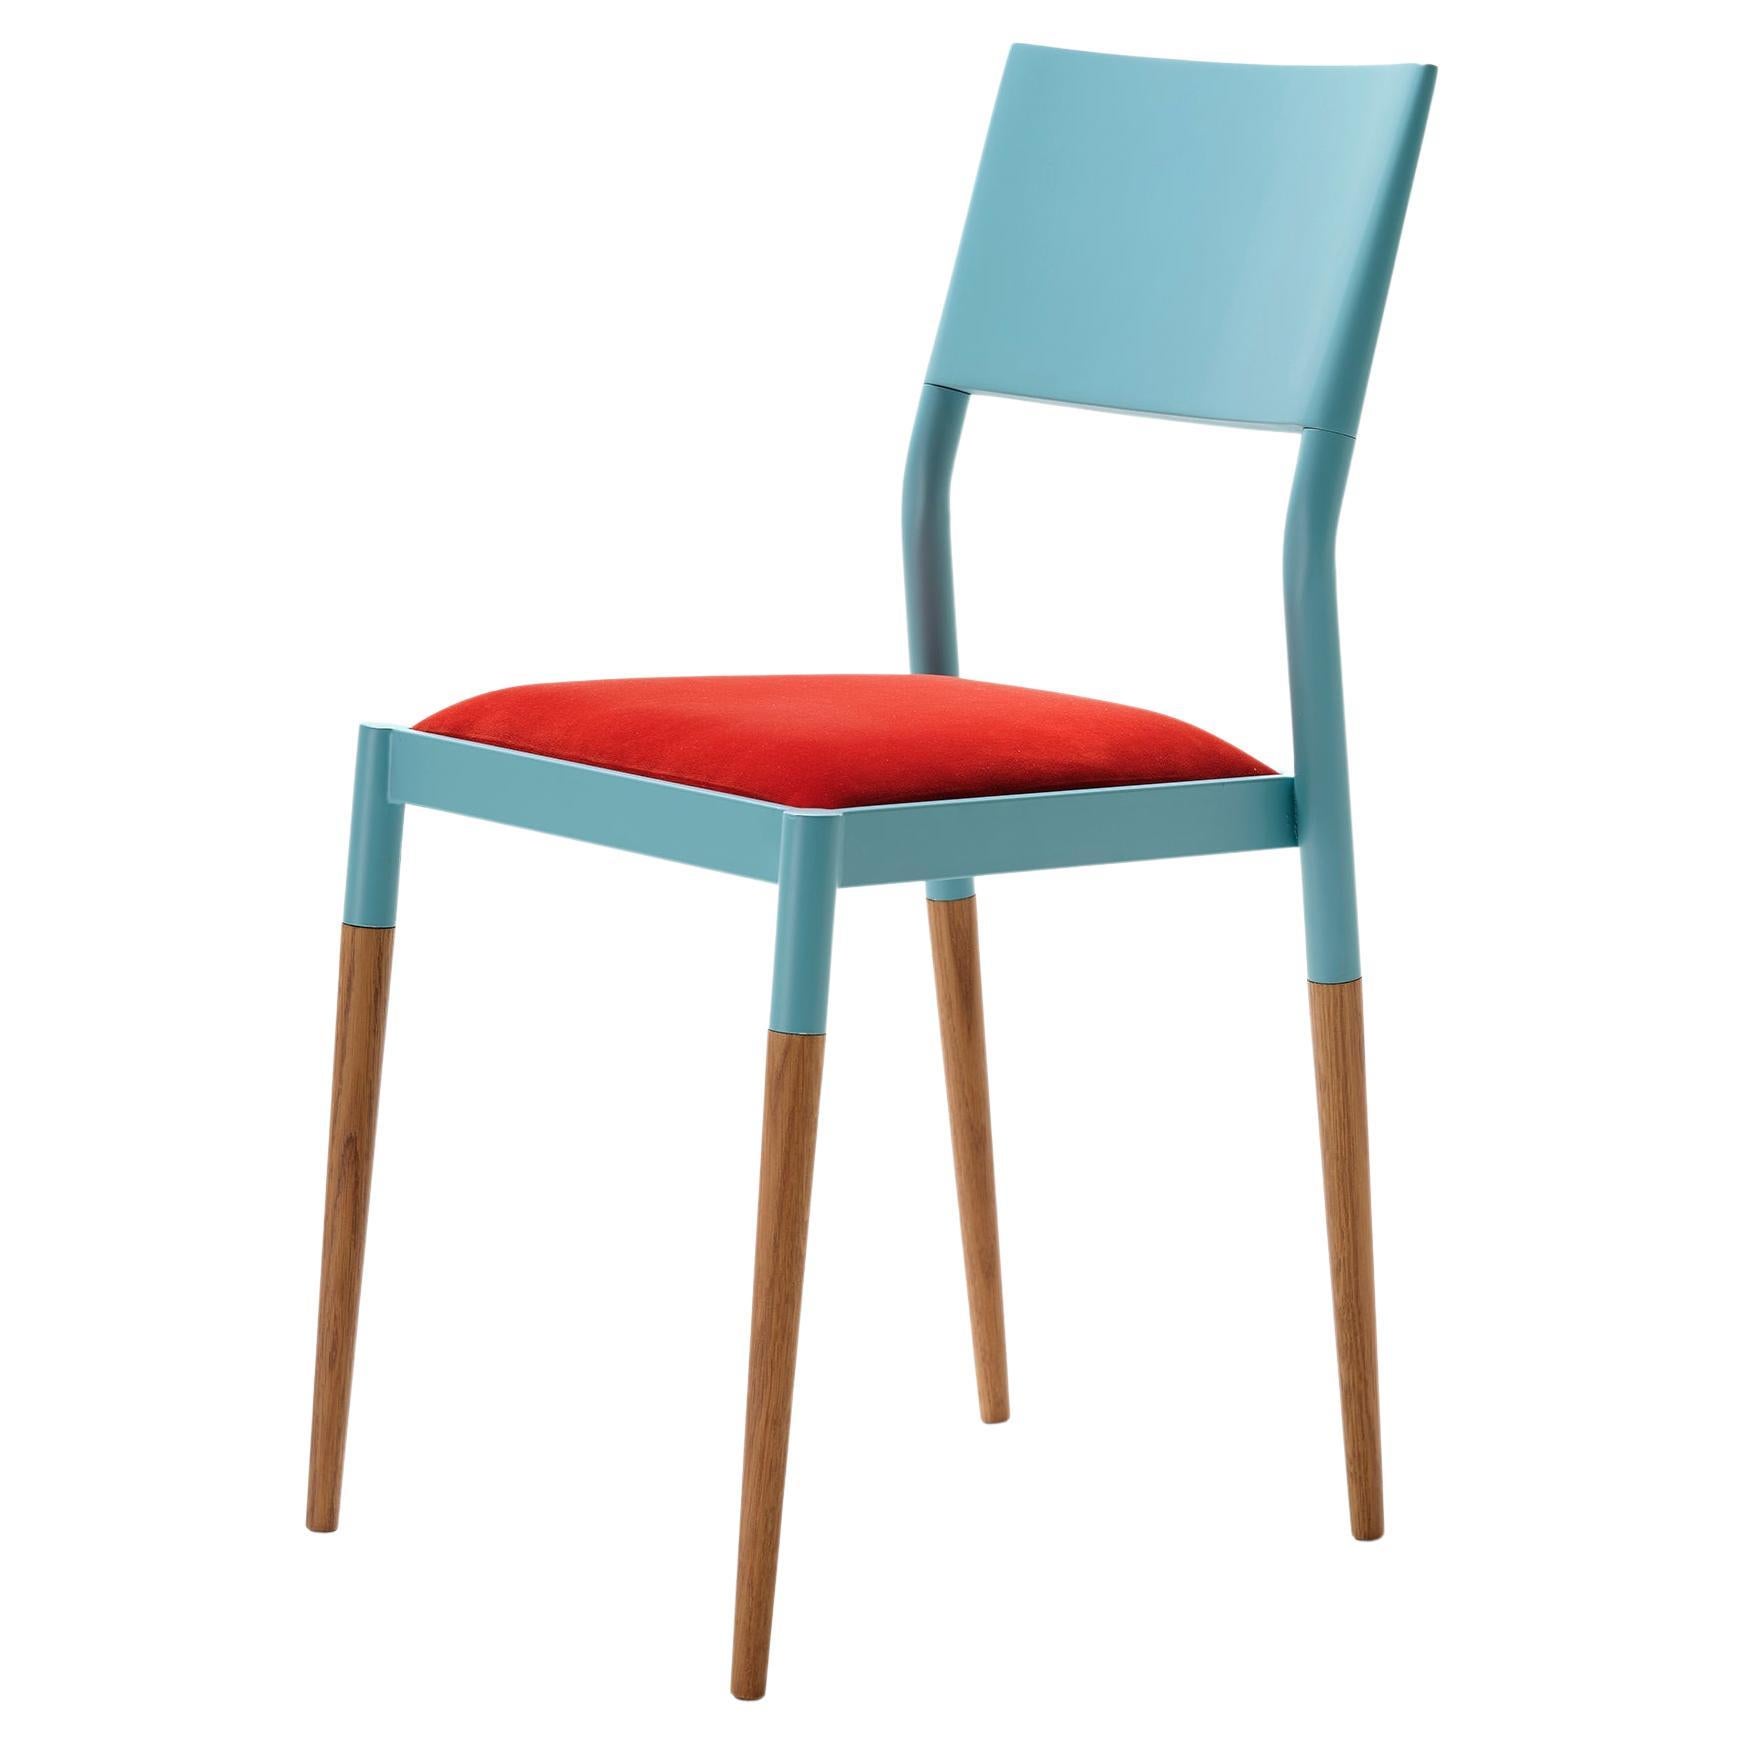 Moderner Stuhl aus Stahl und Holz des 21. Jahrhunderts mit Samtpolsterung und Sitz